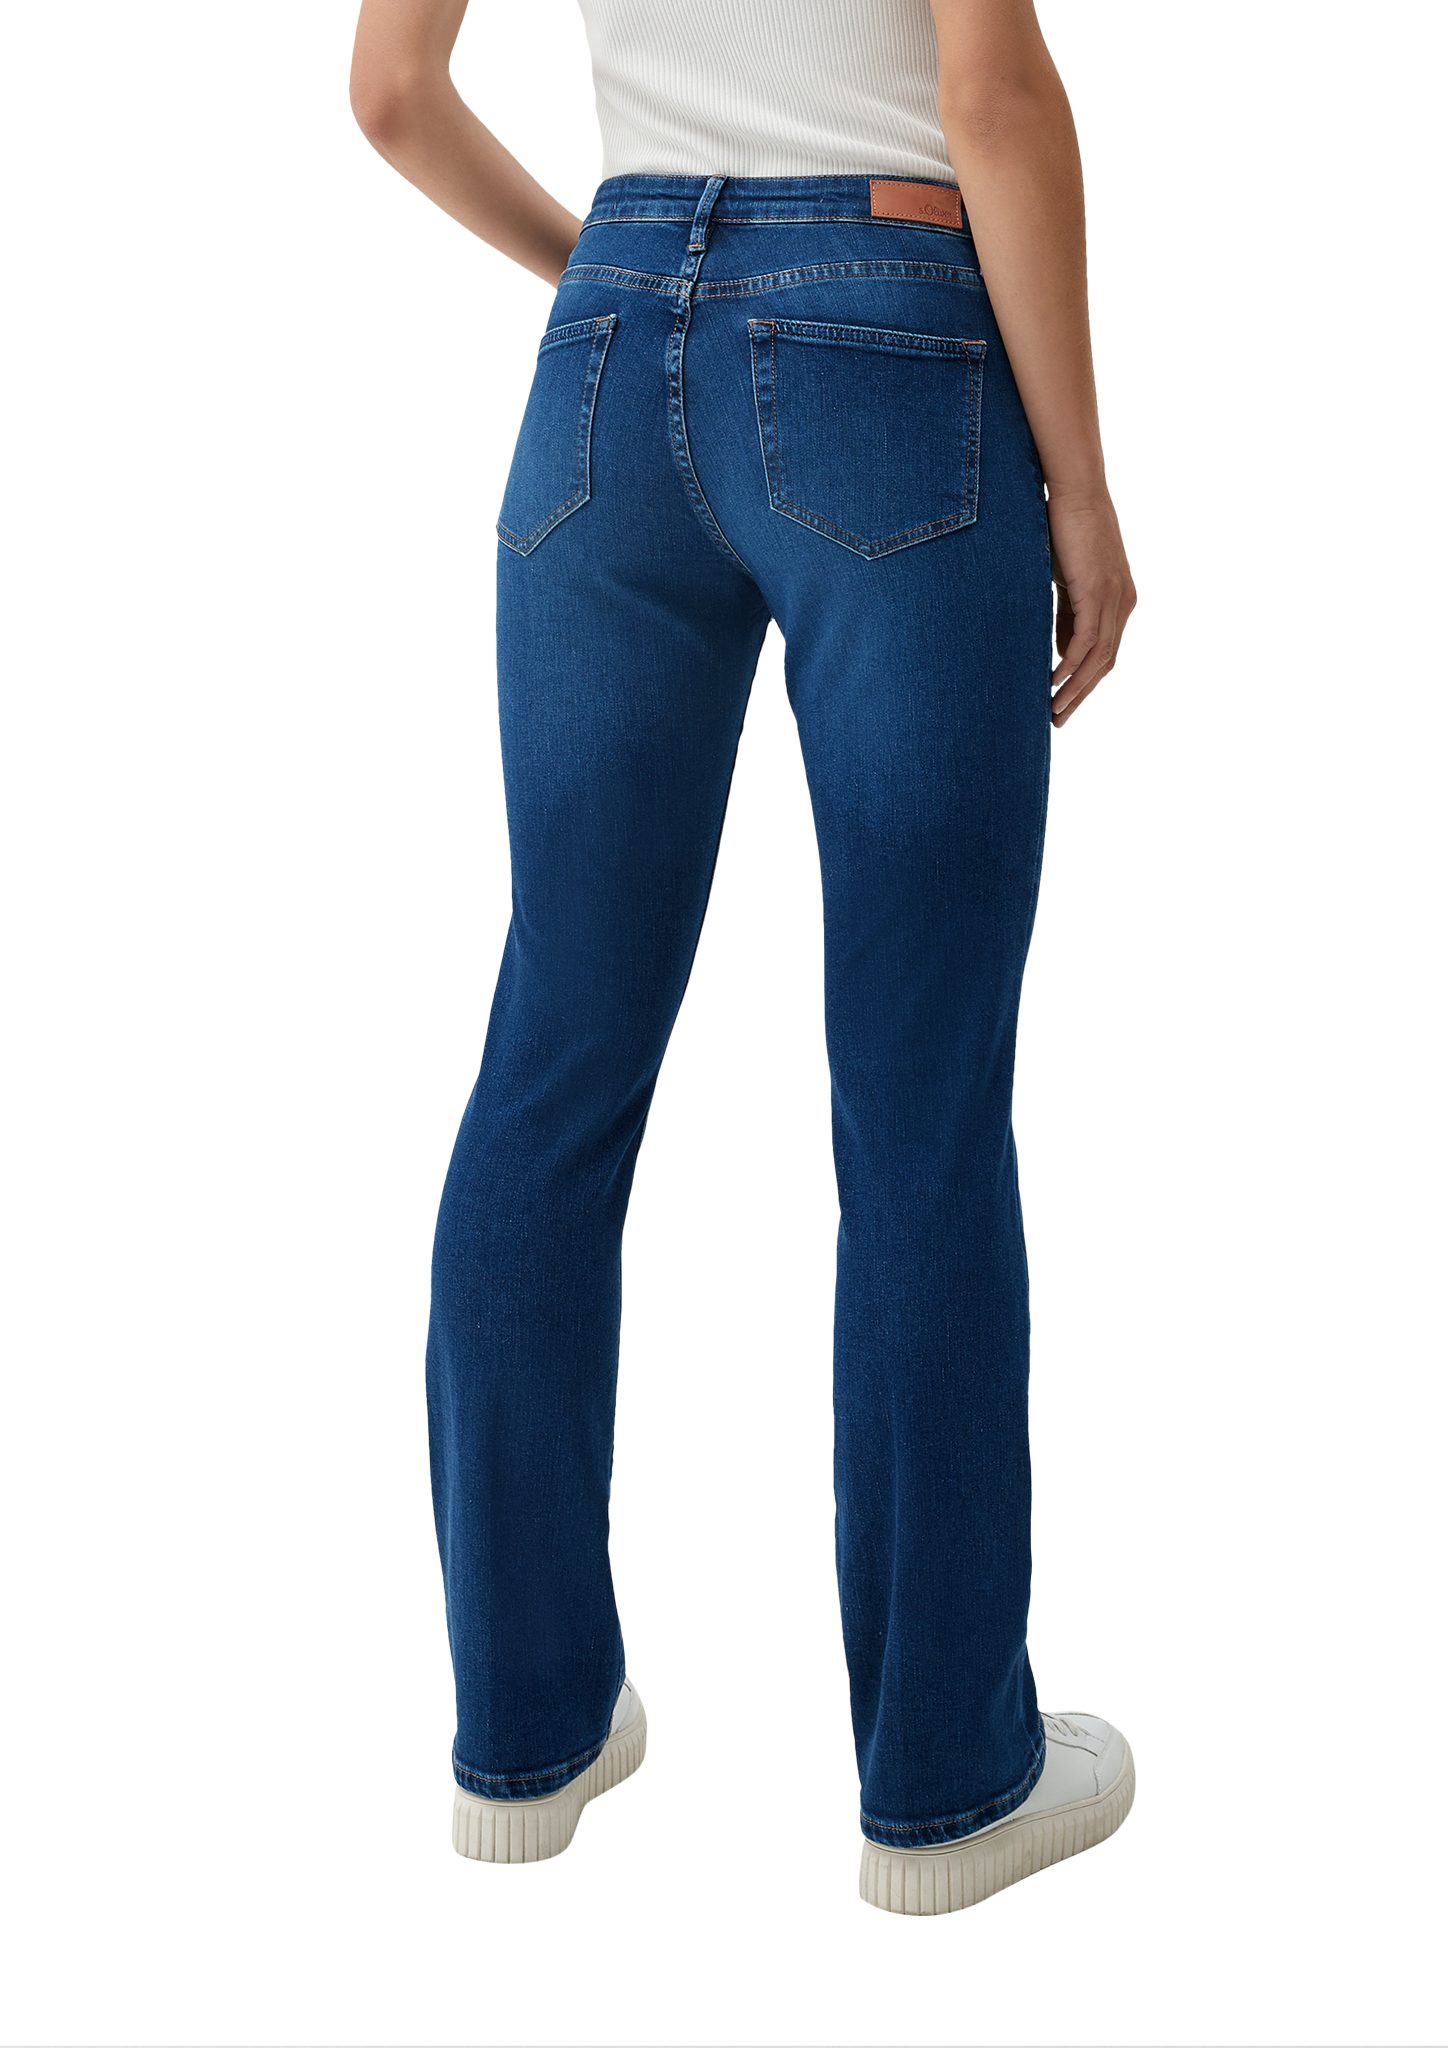 / / Mid 5-Pocket-Jeans / Rise Fit Bootcut Leg Slim Leder-Patch s.Oliver Beverly Jeans